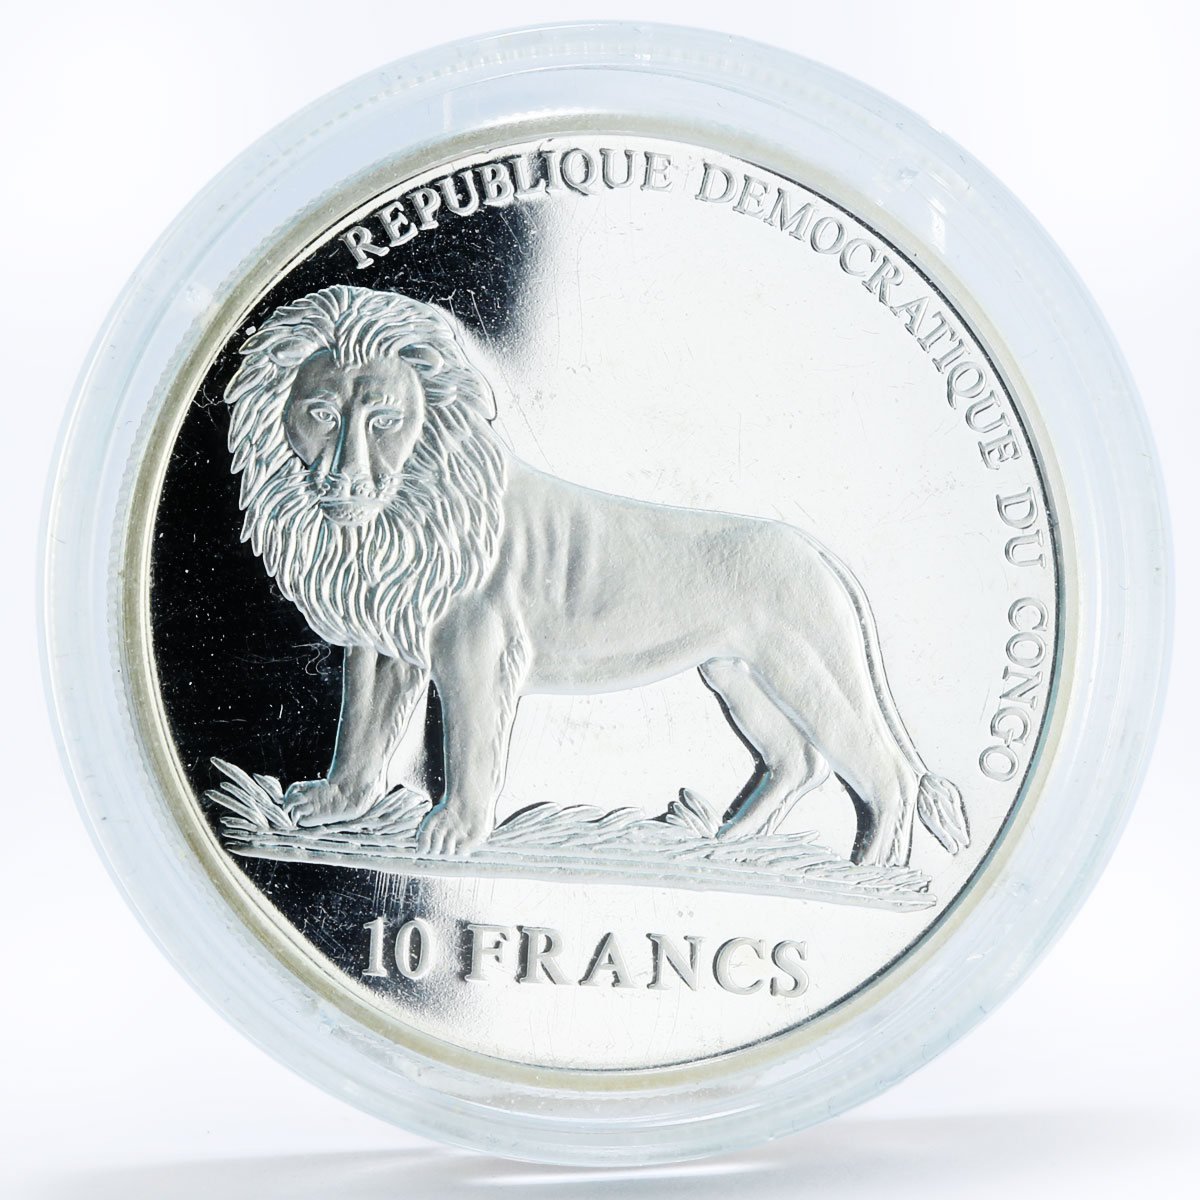 Congo 10 francs Kofi Annan Nobel Peace Prize proof silver coin 2001